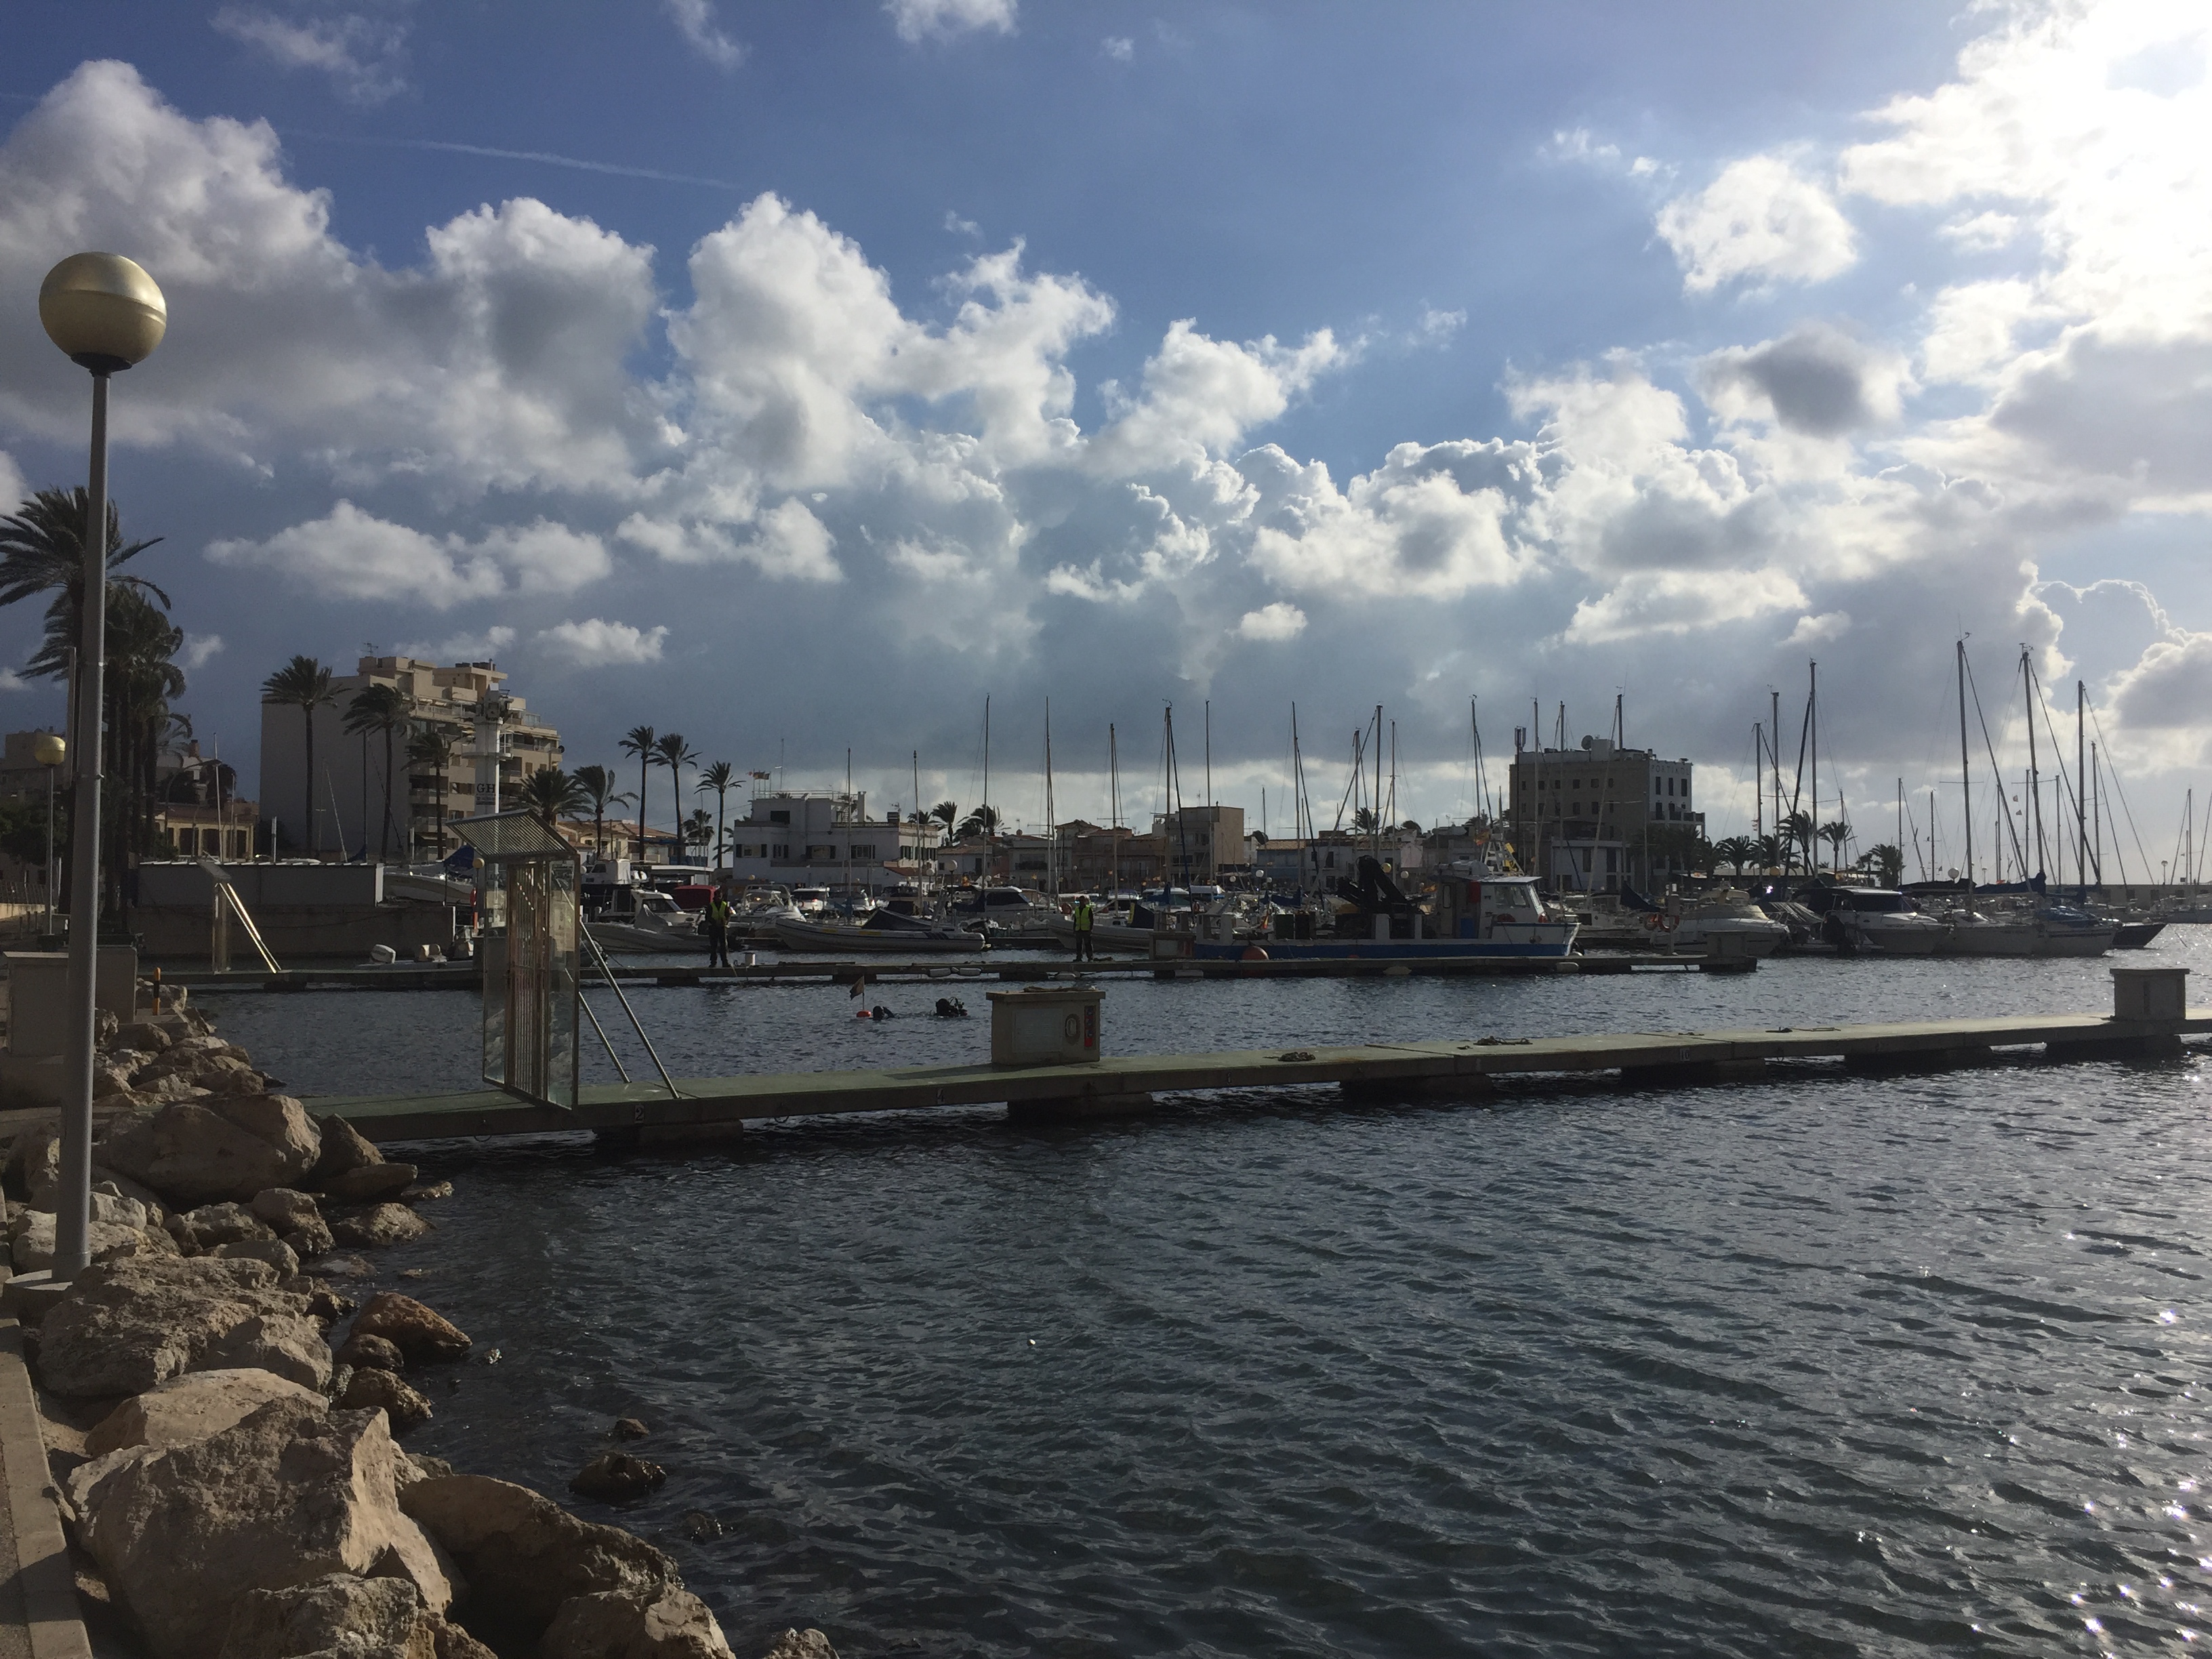 L'APB adequa els amarraments de gestió directa al port de Palma